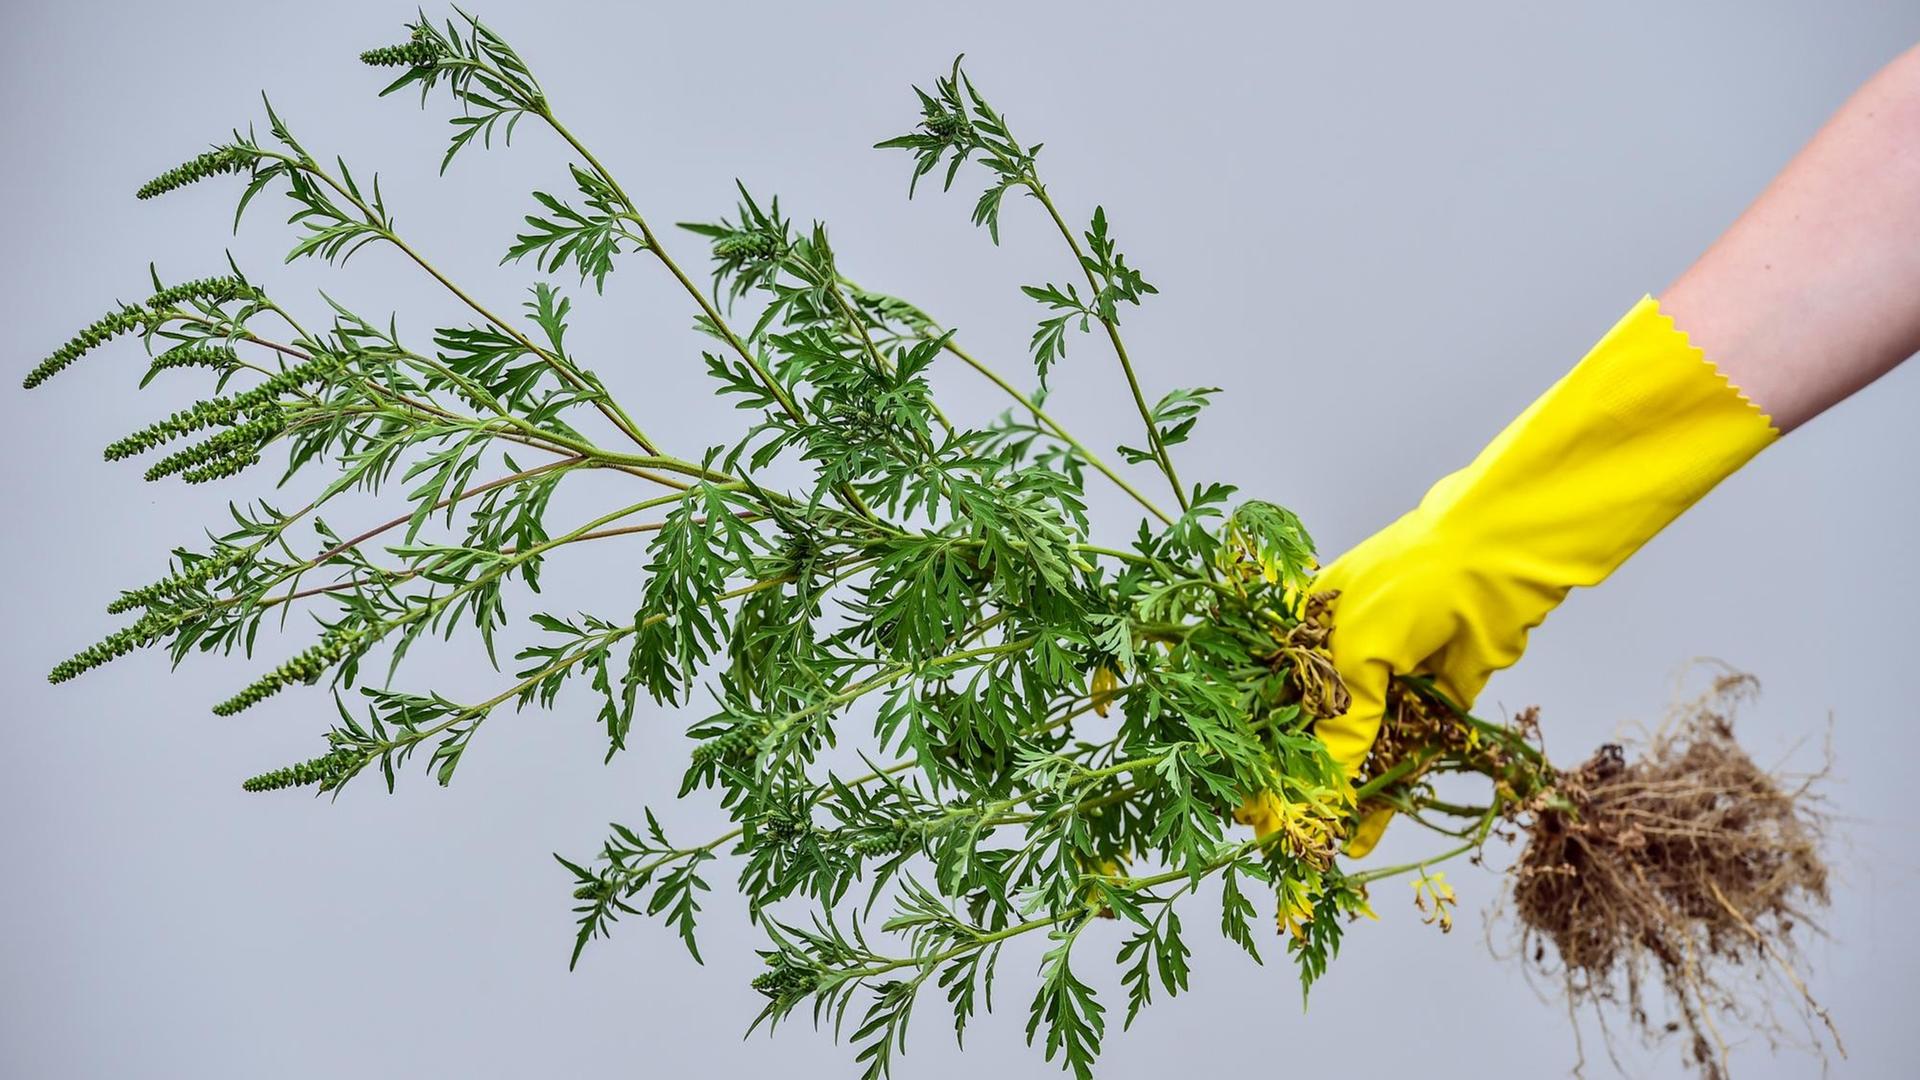 Eine ausgerissene Beifuß-Ambrosiapflanze (Ambrosia artemisifolia) wird am 12.07.2016 nahe Vetschau (Brandenburg) von einer Hand im Gummihandschuh gehalten.